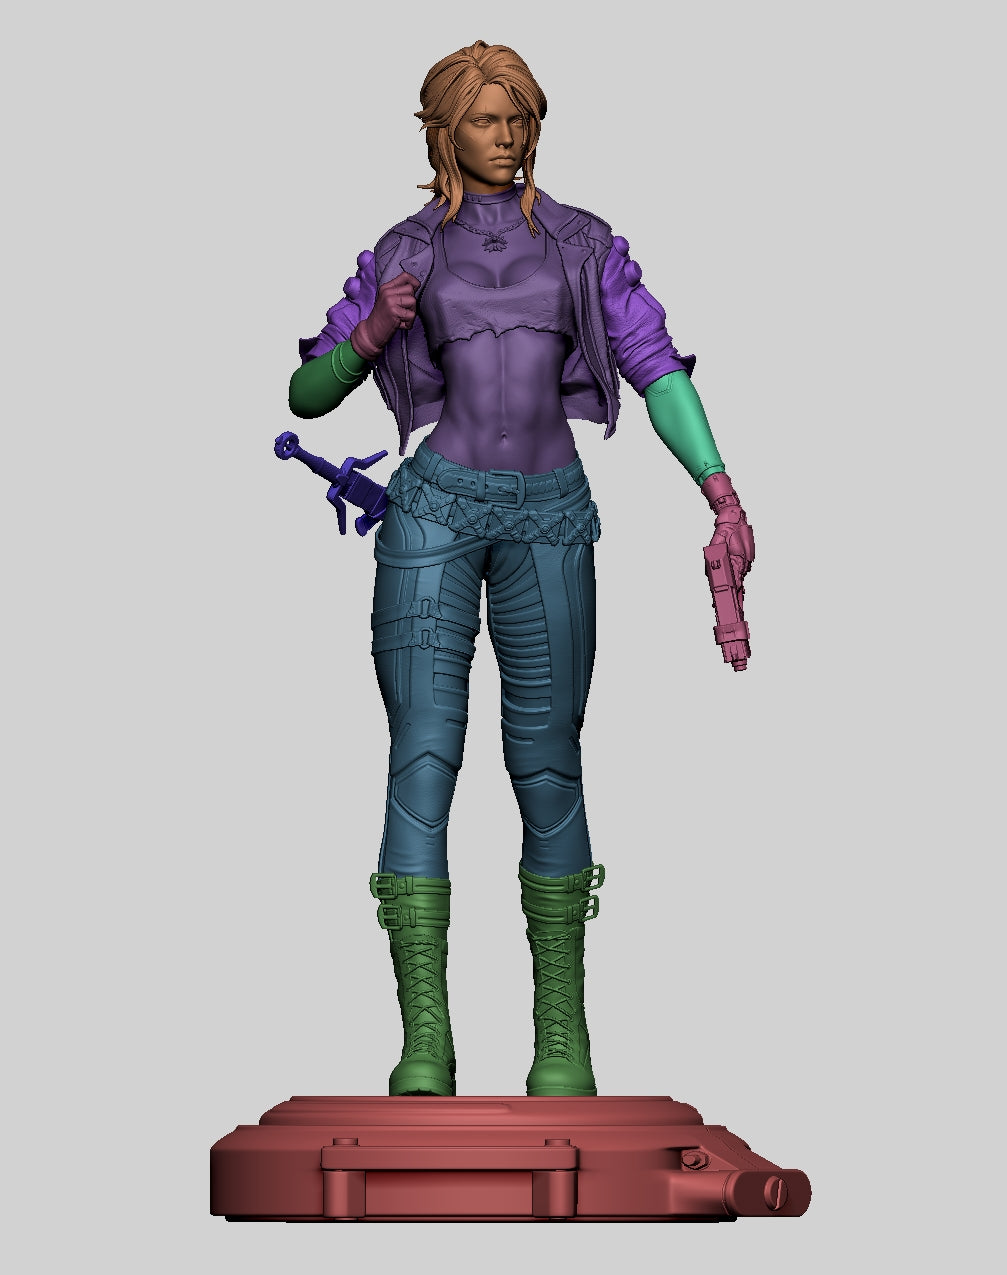 Cyberpunk Ciri 3D-geprint miniatuur geschaald standbeeld figuur SFW NSFW